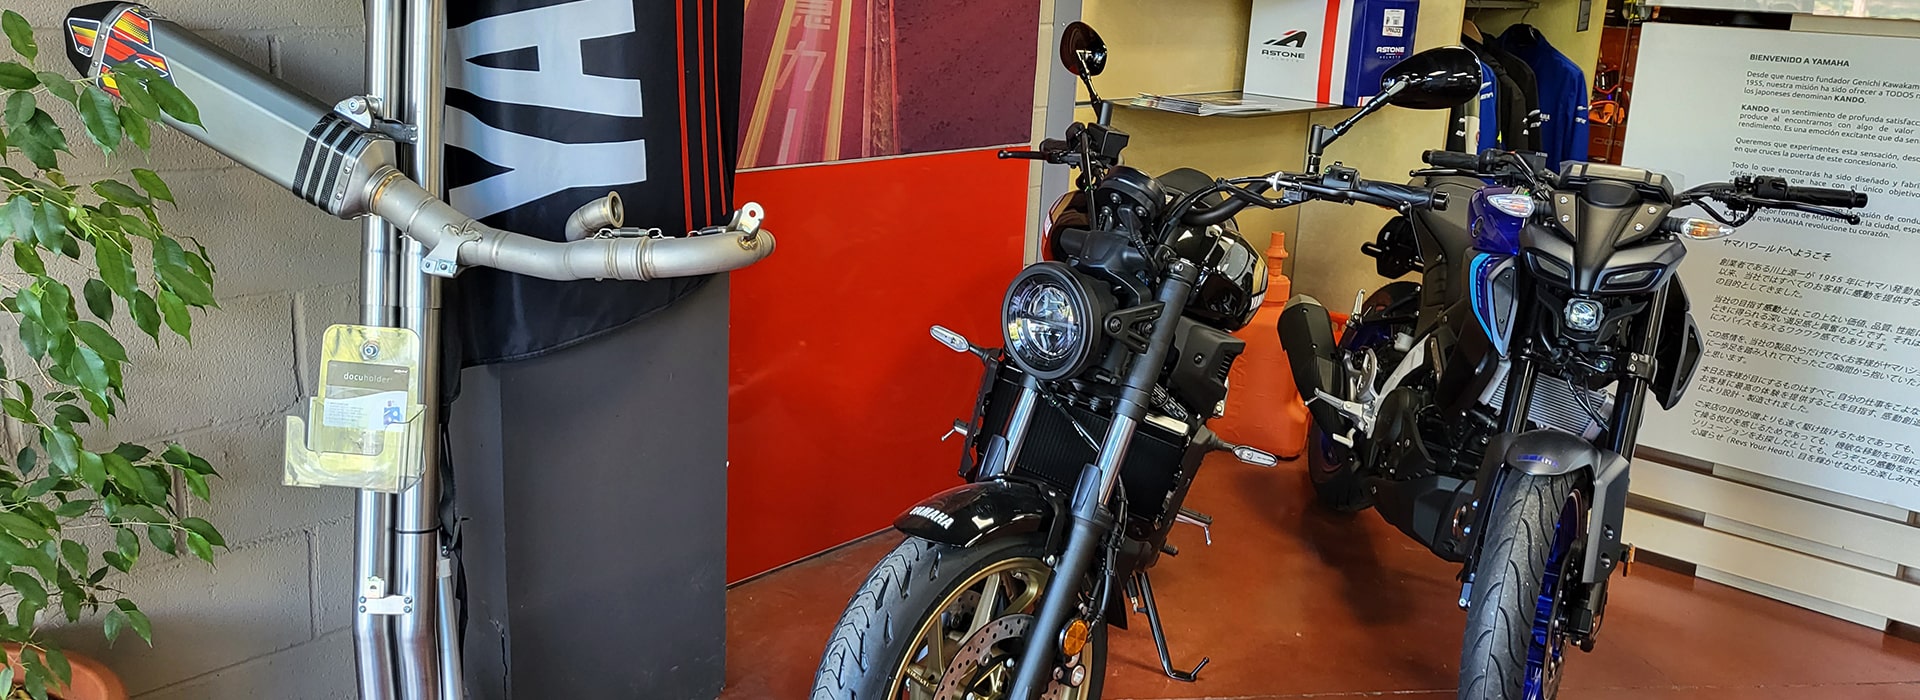 Entrega y recogida de motos en Sevilla - Motos Gamarro